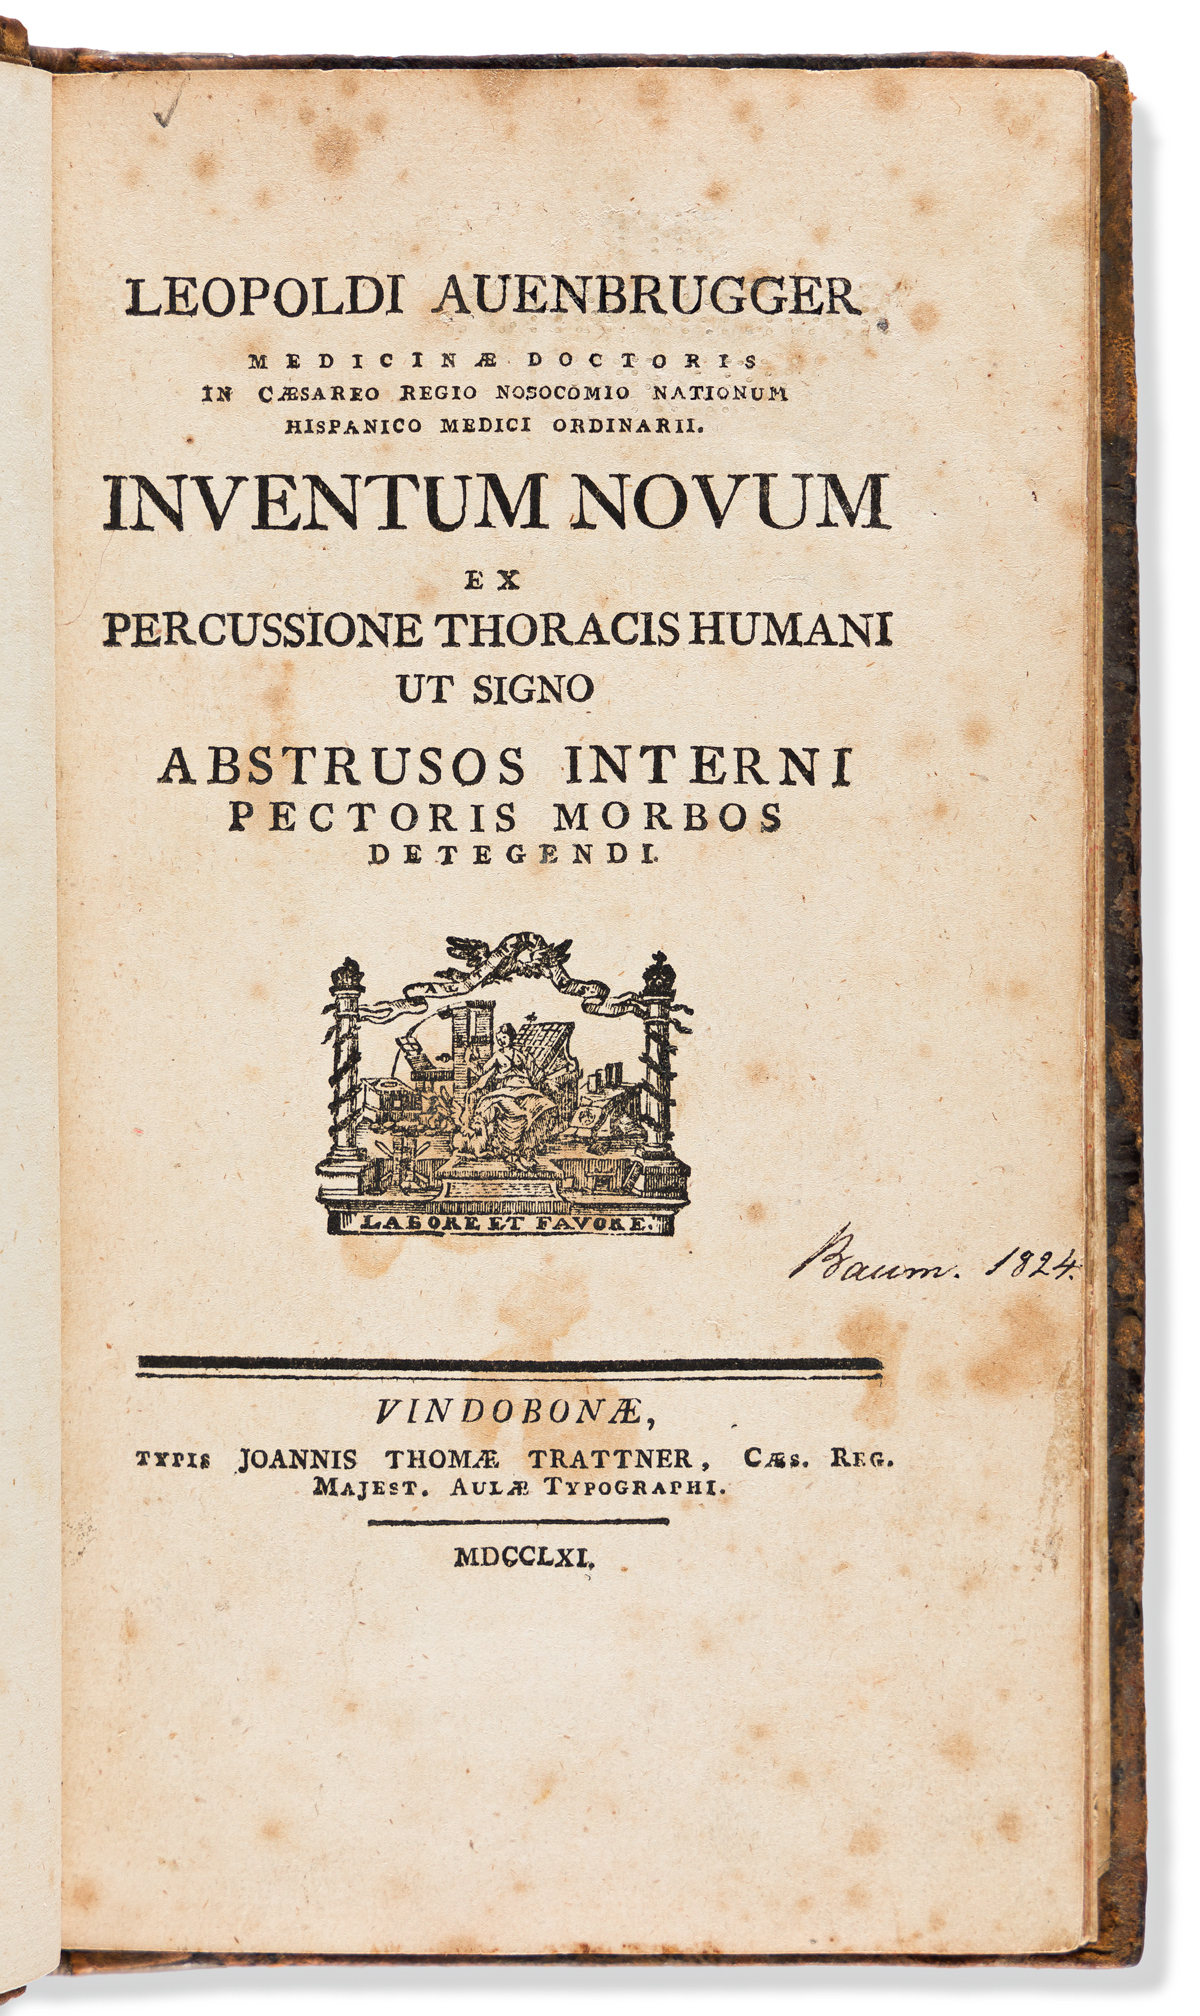 Auenbrugger, Leopold (1722-1809) Inventum novum ex percussione thoracis humani ut signo Abstrusos Interni Pectoris Morbos Detegendi.